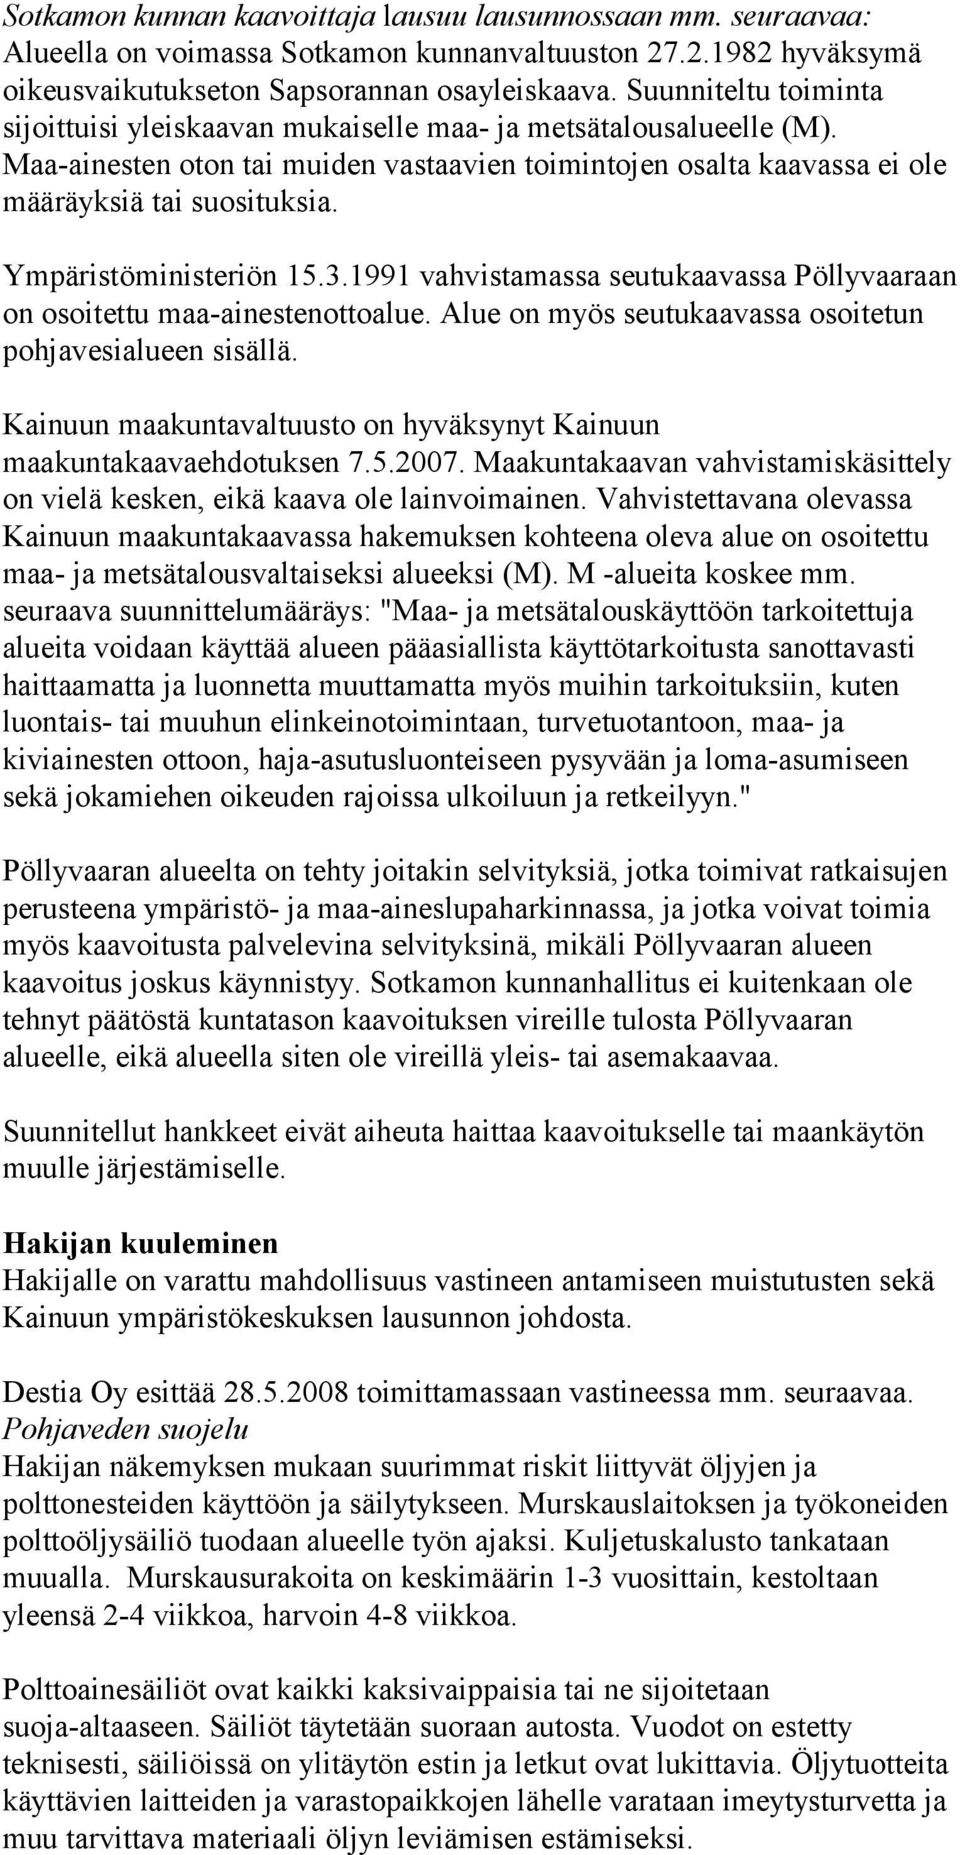 Ympäristöministeriön 15.3.1991 vahvistamassa seutukaavassa Pöllyvaaraan on osoitettu maa-ainestenottoalue. Alue on myös seutukaavassa osoitetun pohjavesialueen sisällä.